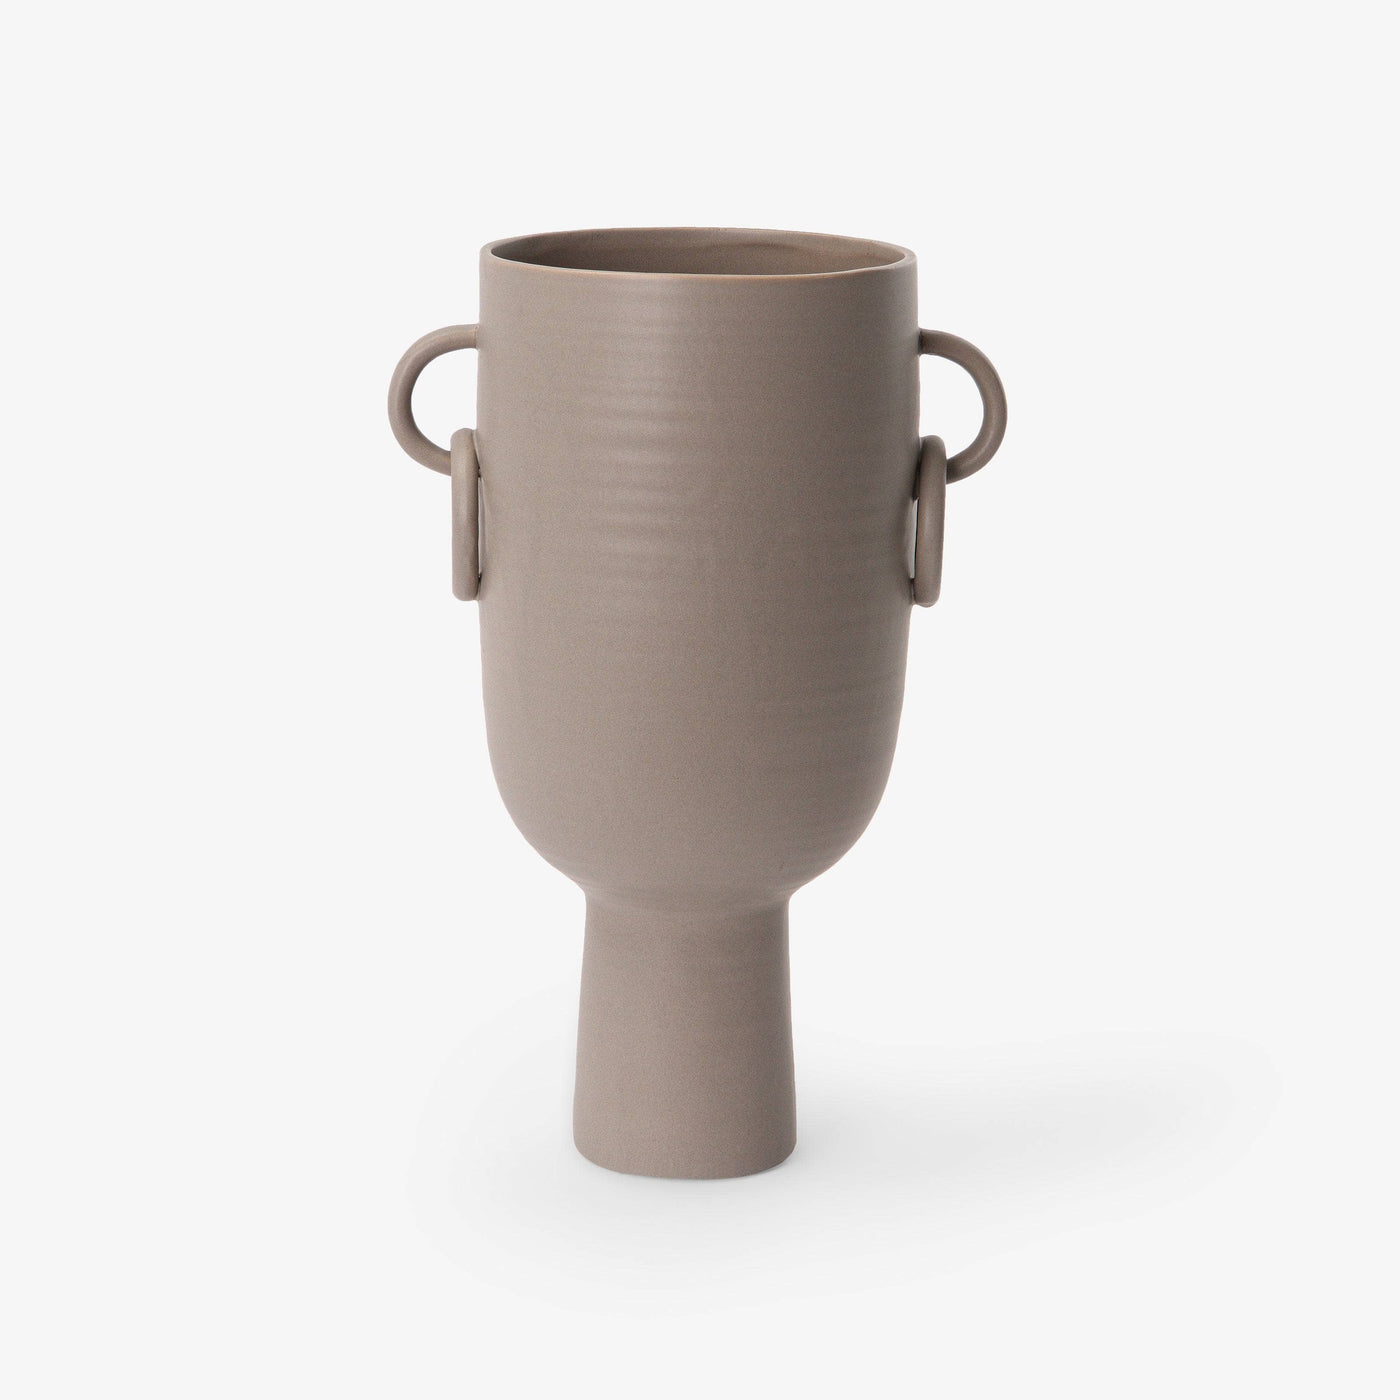 Branksome Ceramic Vase, Taupe, M Vases sazy.com